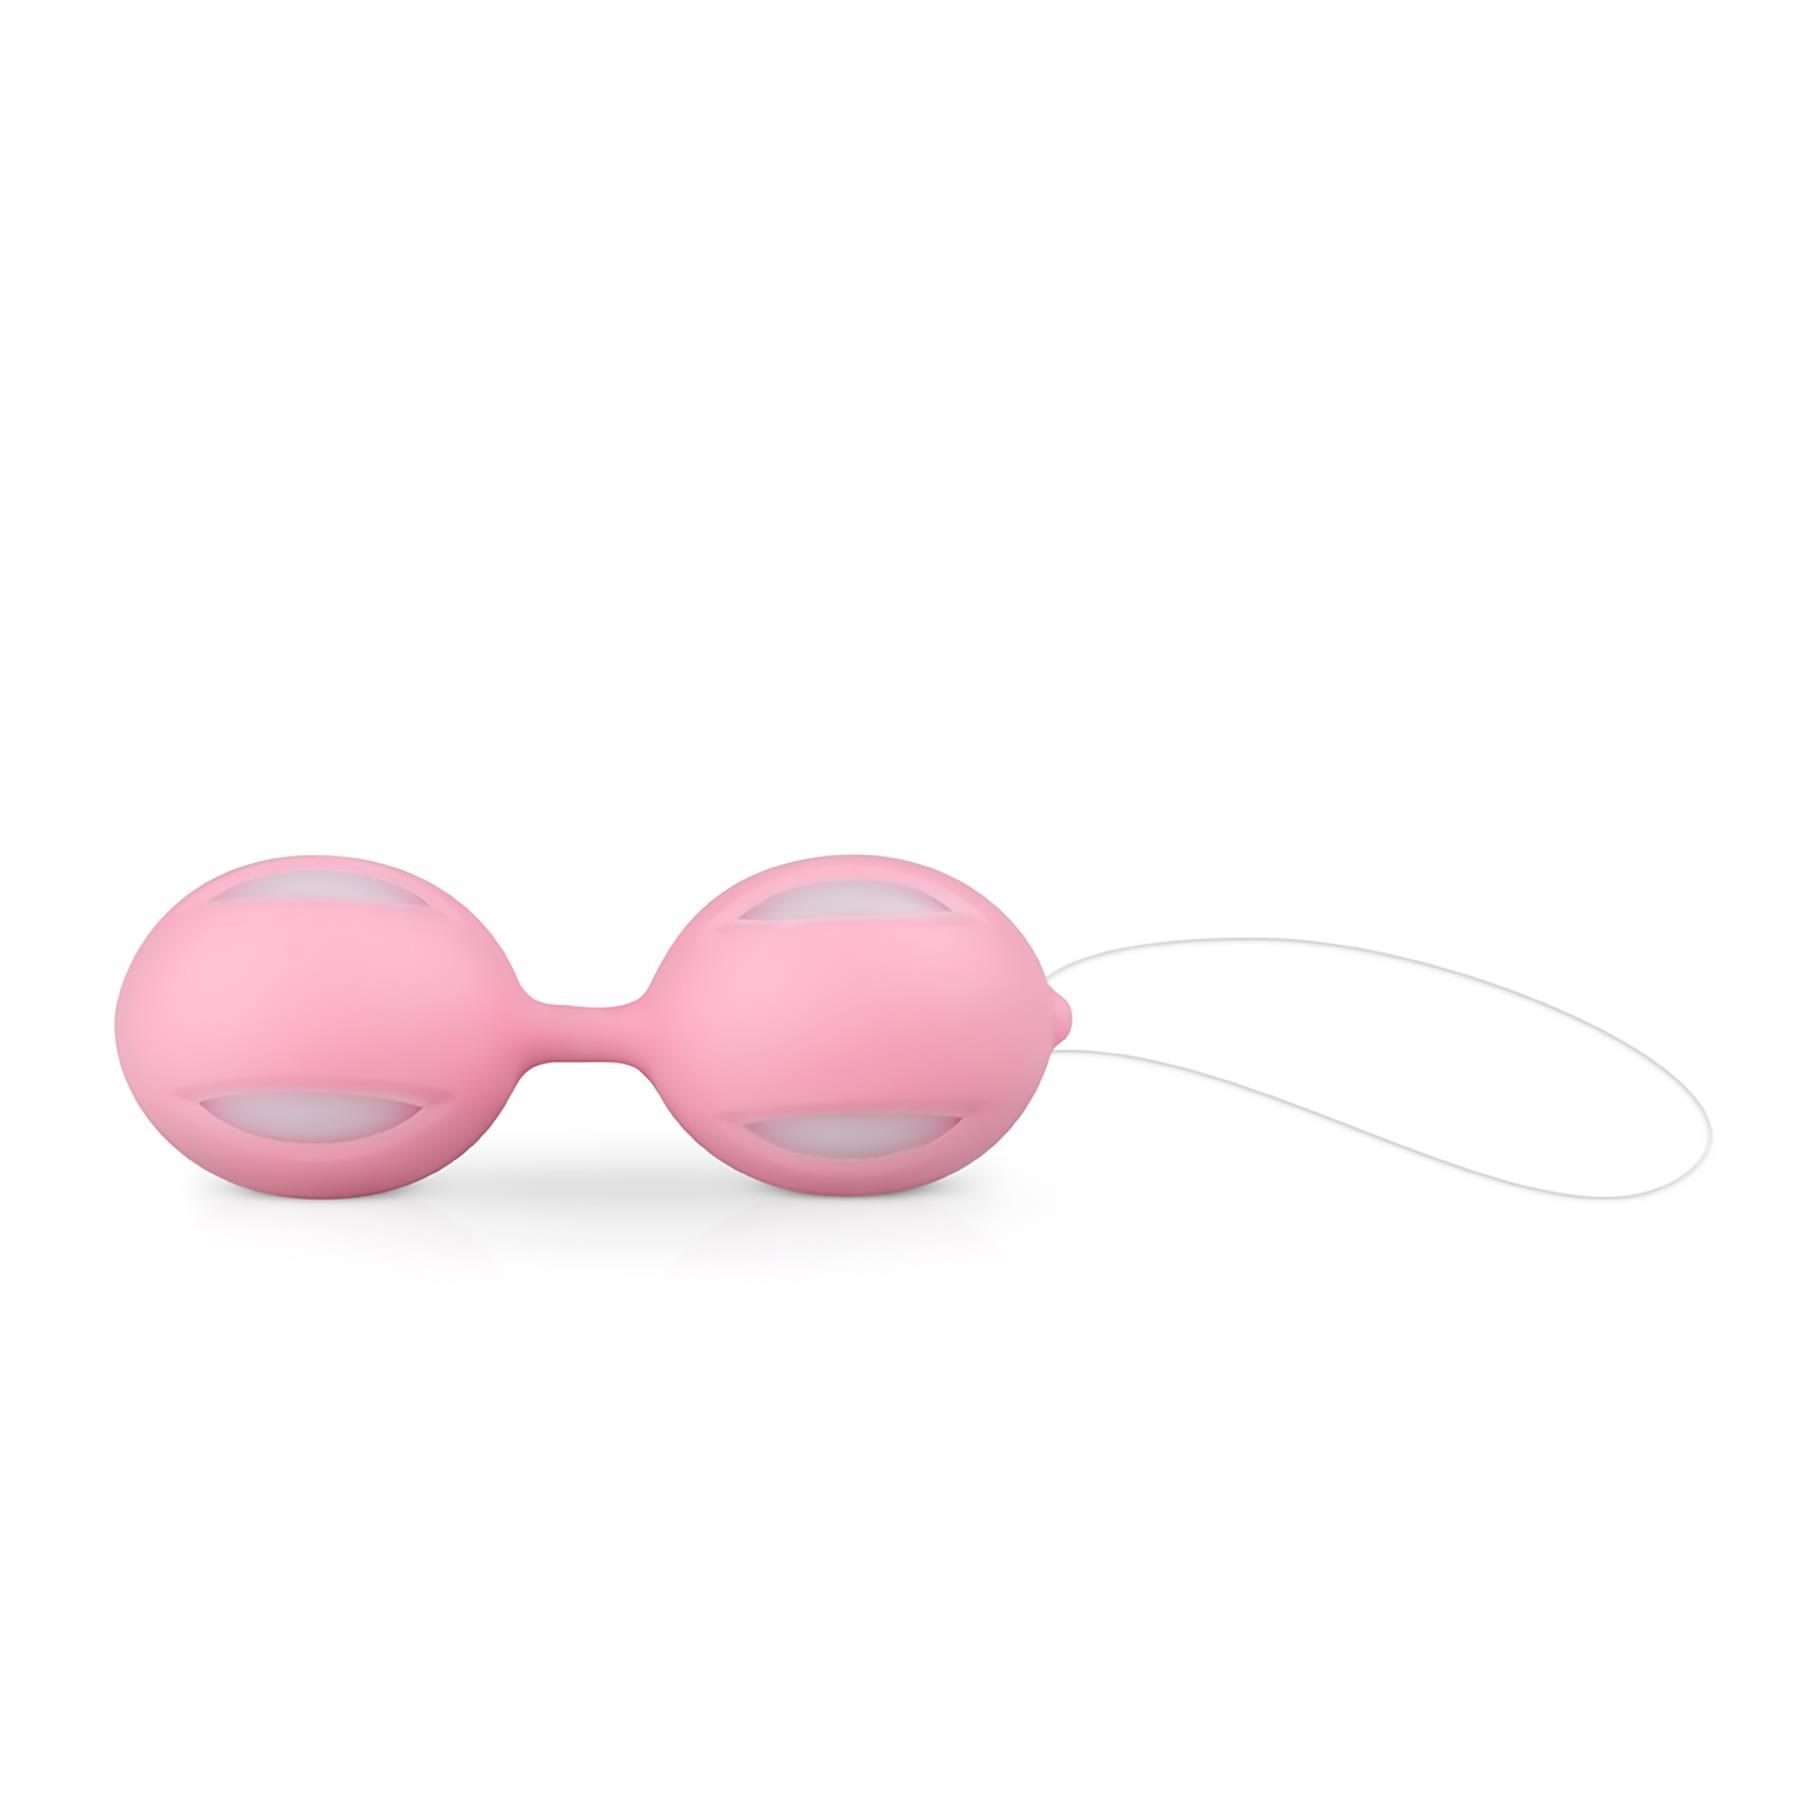 I Love Pink Gift Set - Kegel Balls